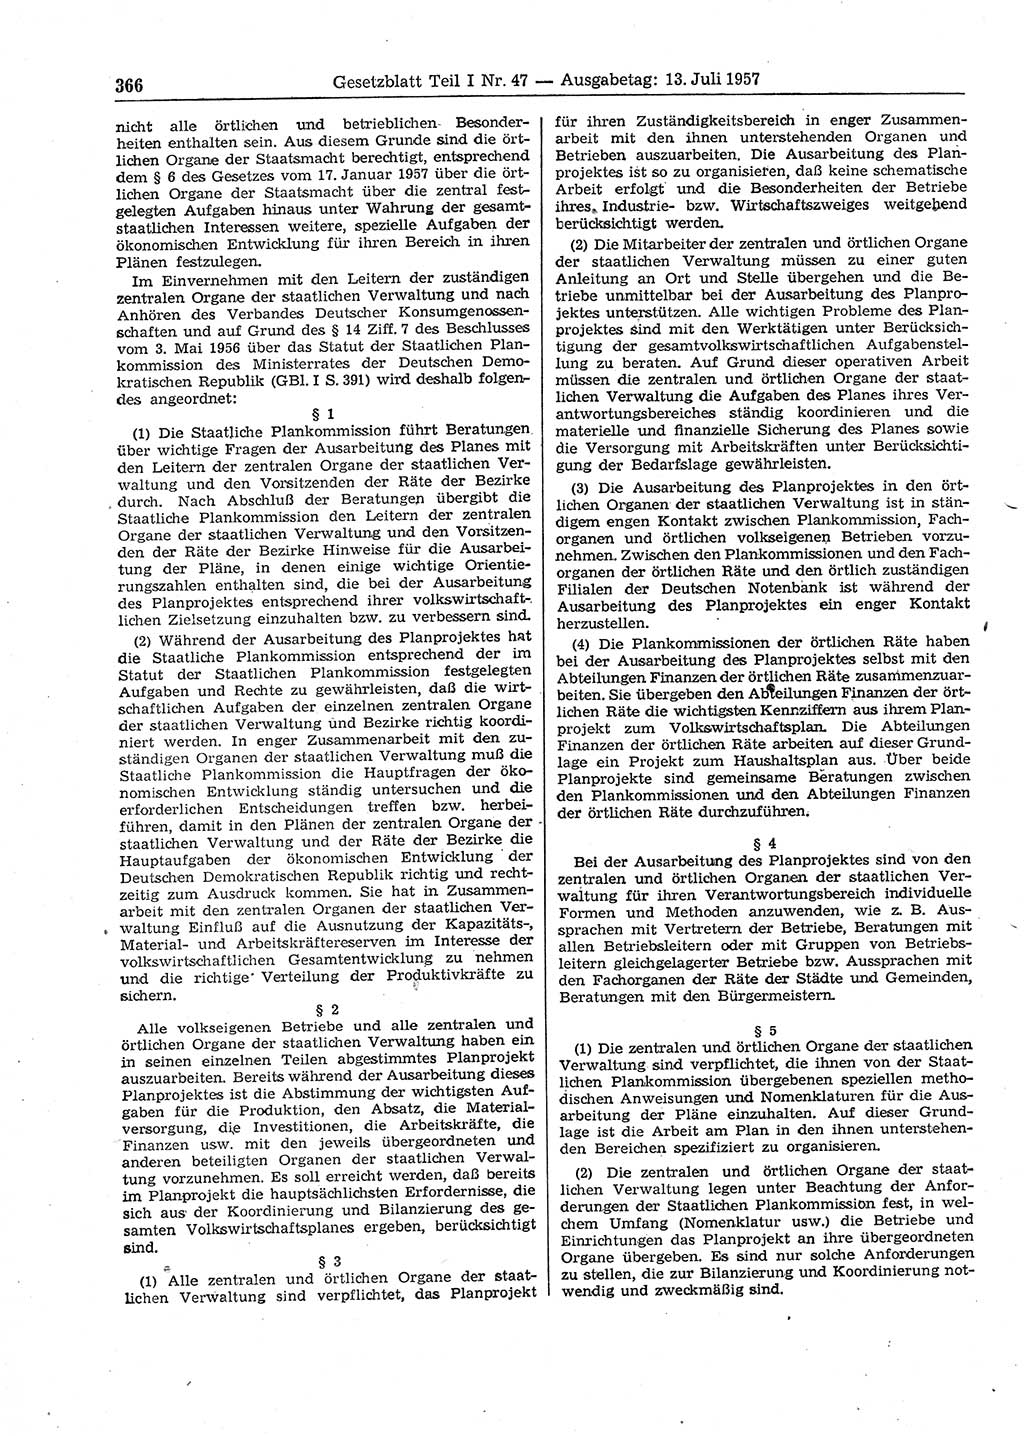 Gesetzblatt (GBl.) der Deutschen Demokratischen Republik (DDR) Teil Ⅰ 1957, Seite 366 (GBl. DDR Ⅰ 1957, S. 366)